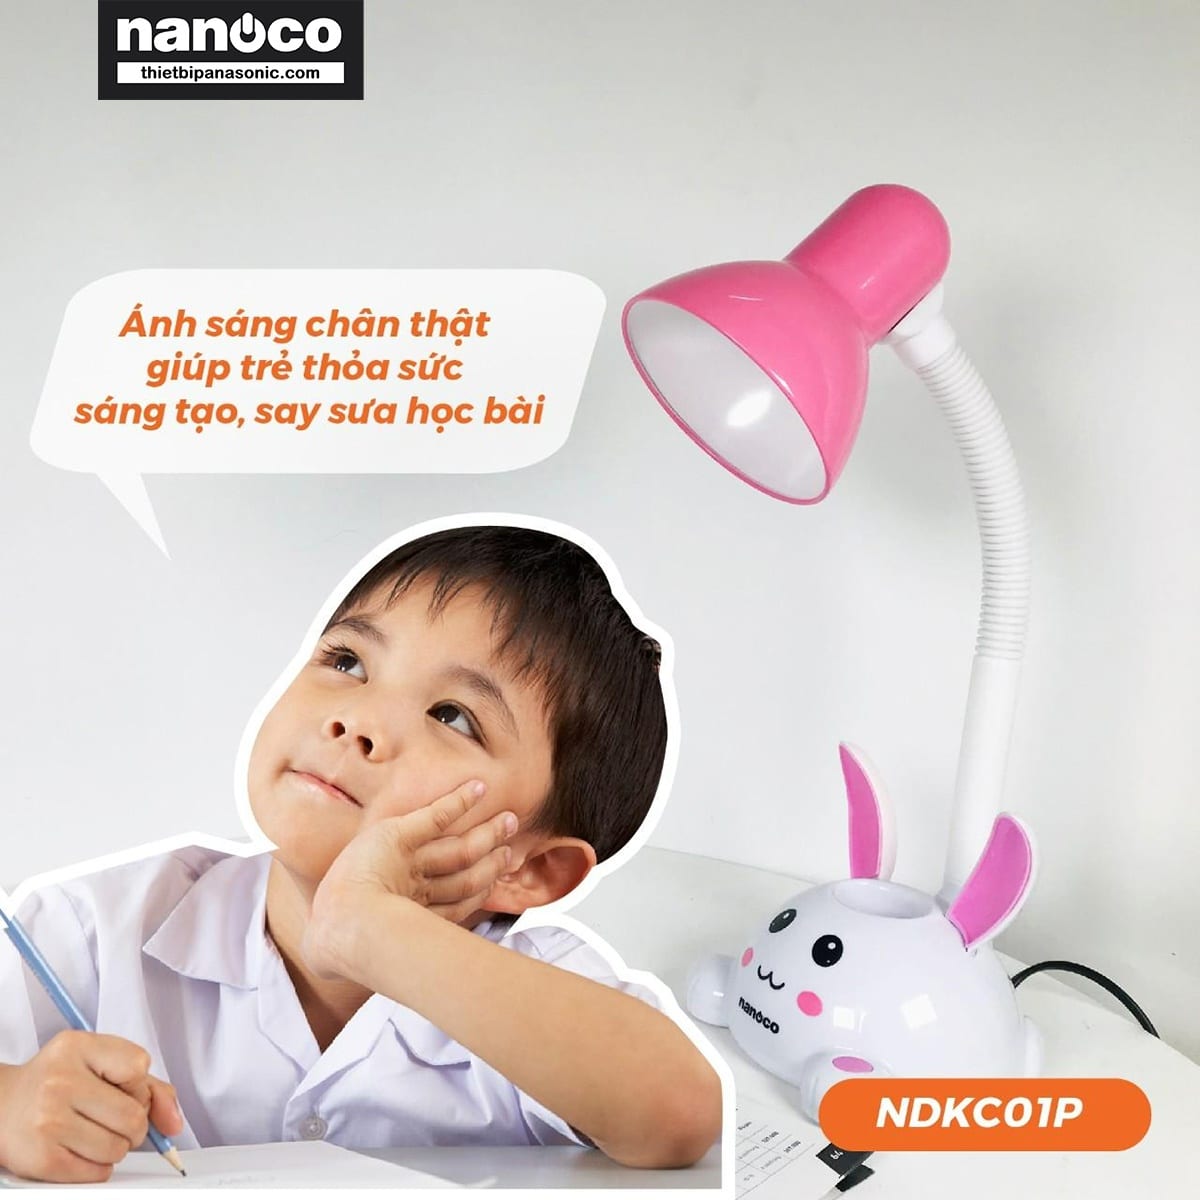 Đèn bàn Nanoco NDKC01P mang lại ánh sáng êm dịu, không gây mỏi mắt